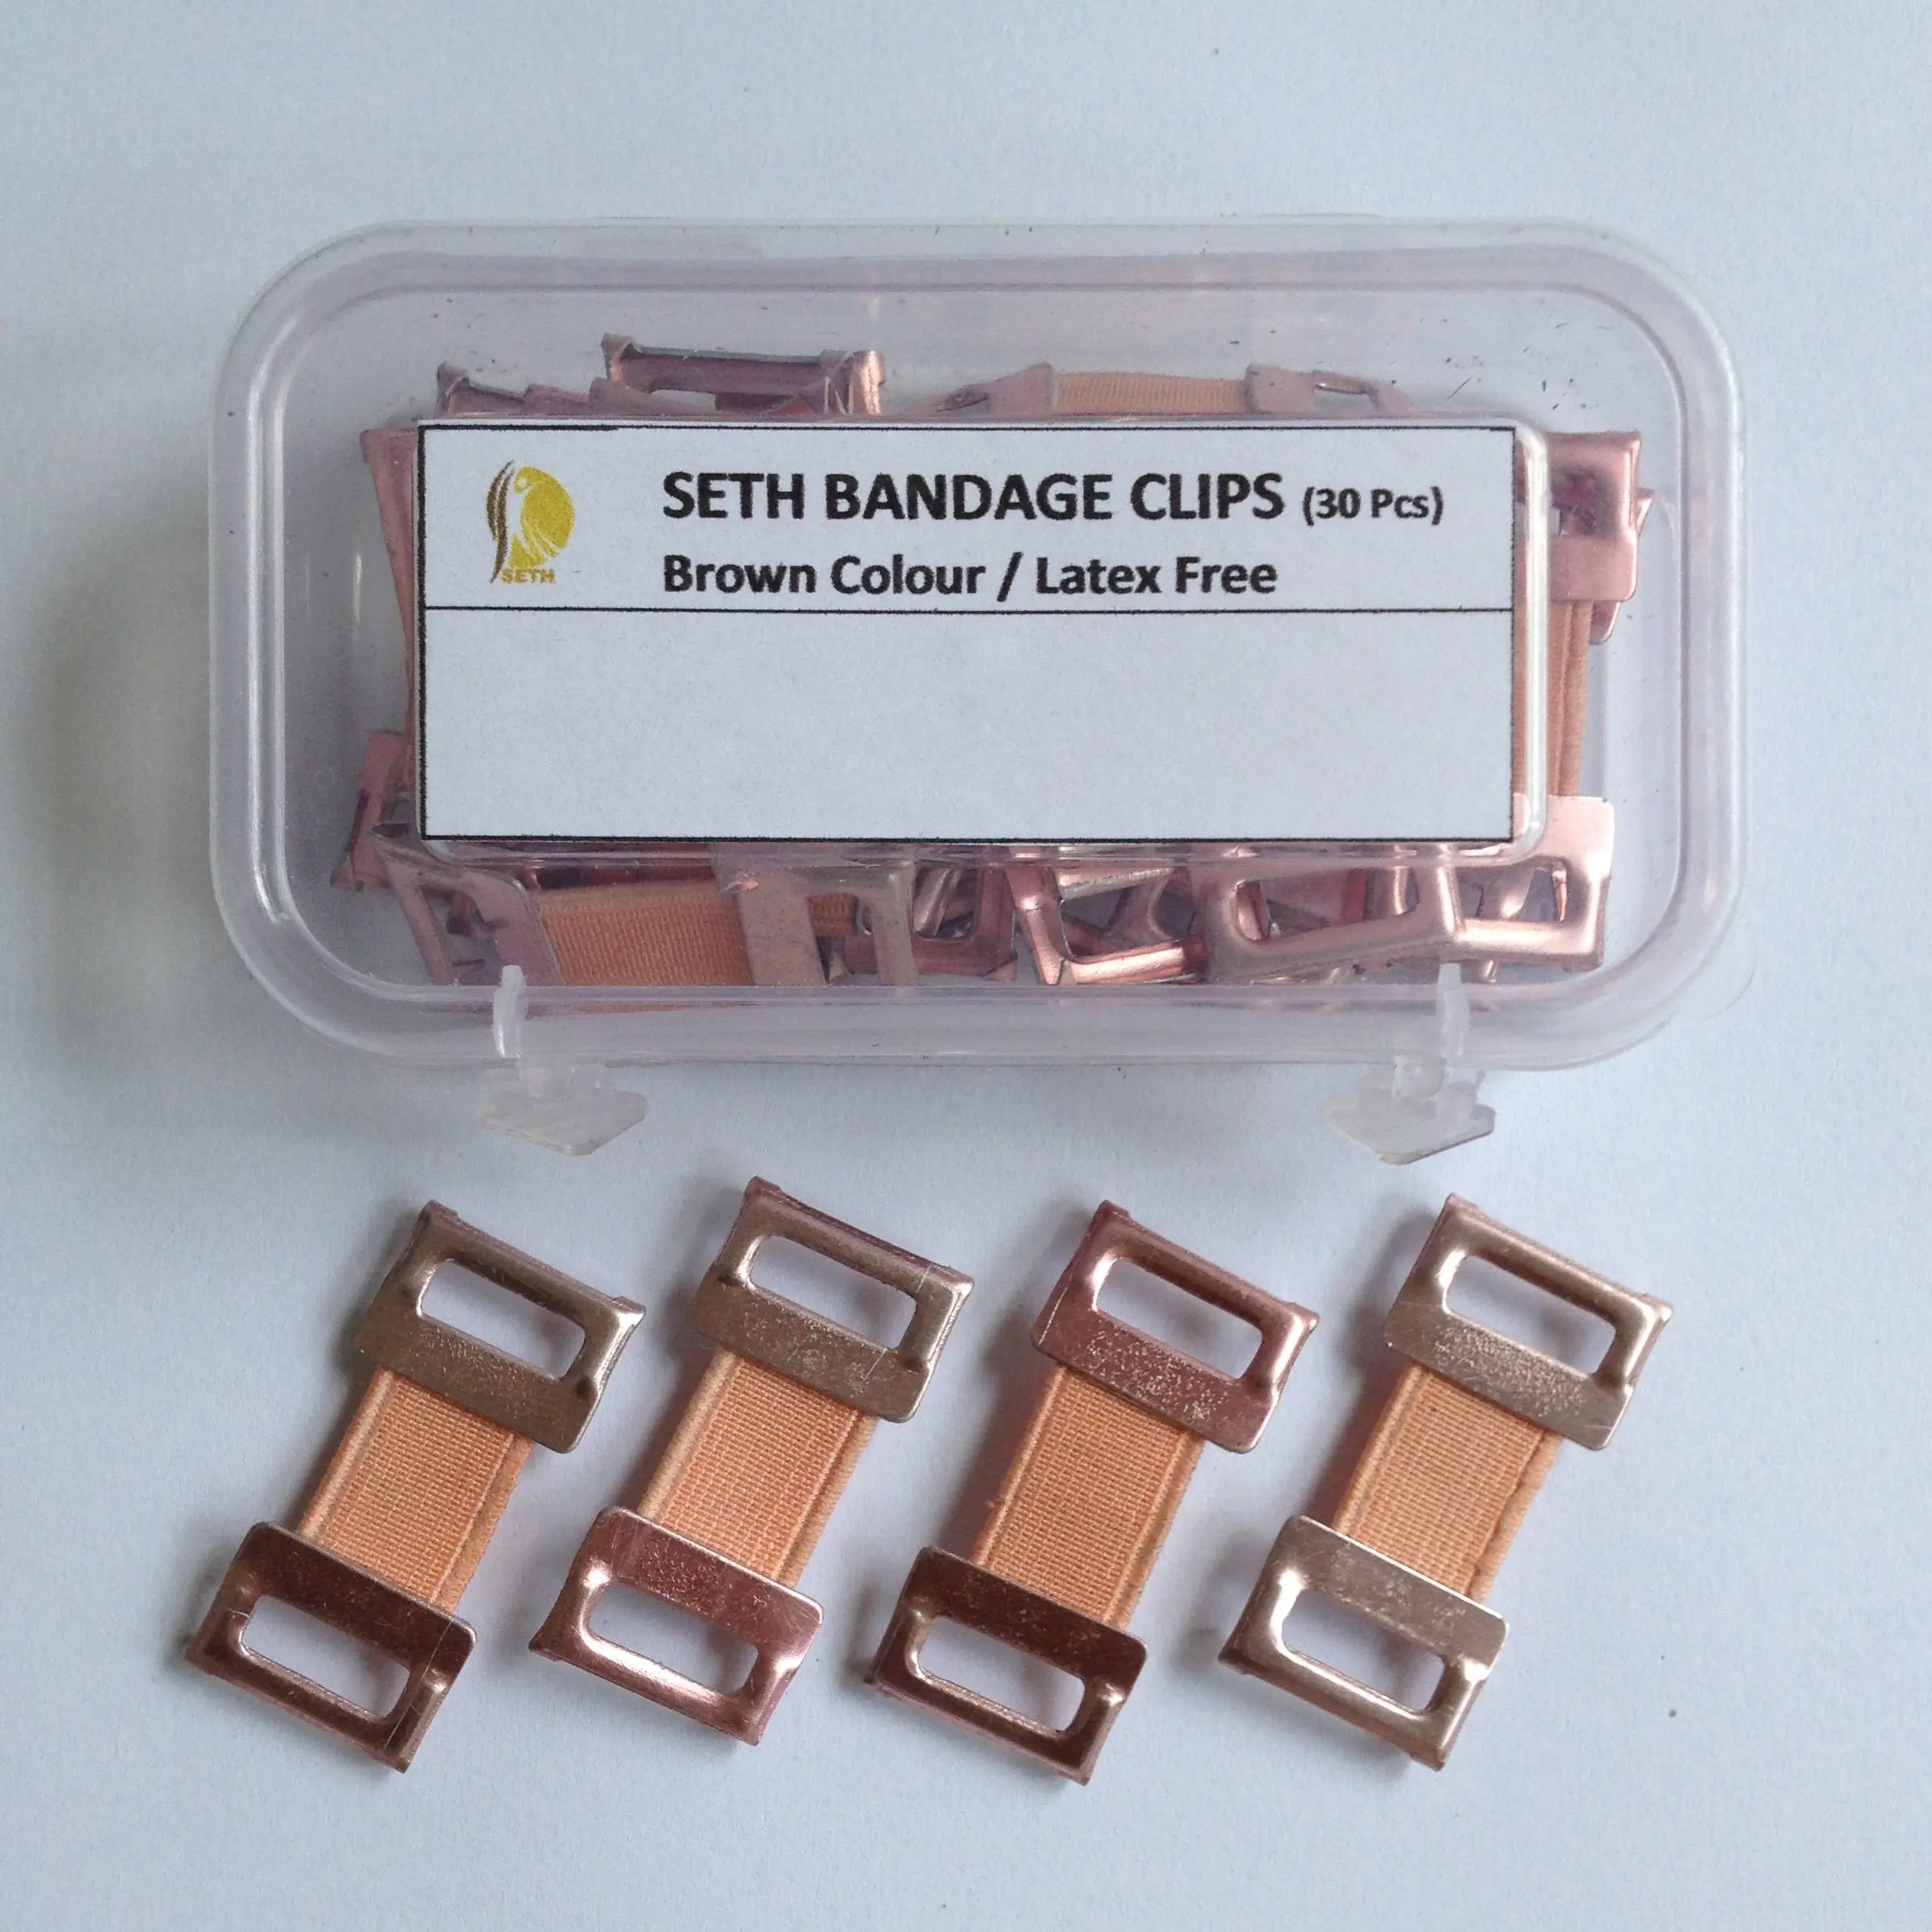 bandage clips